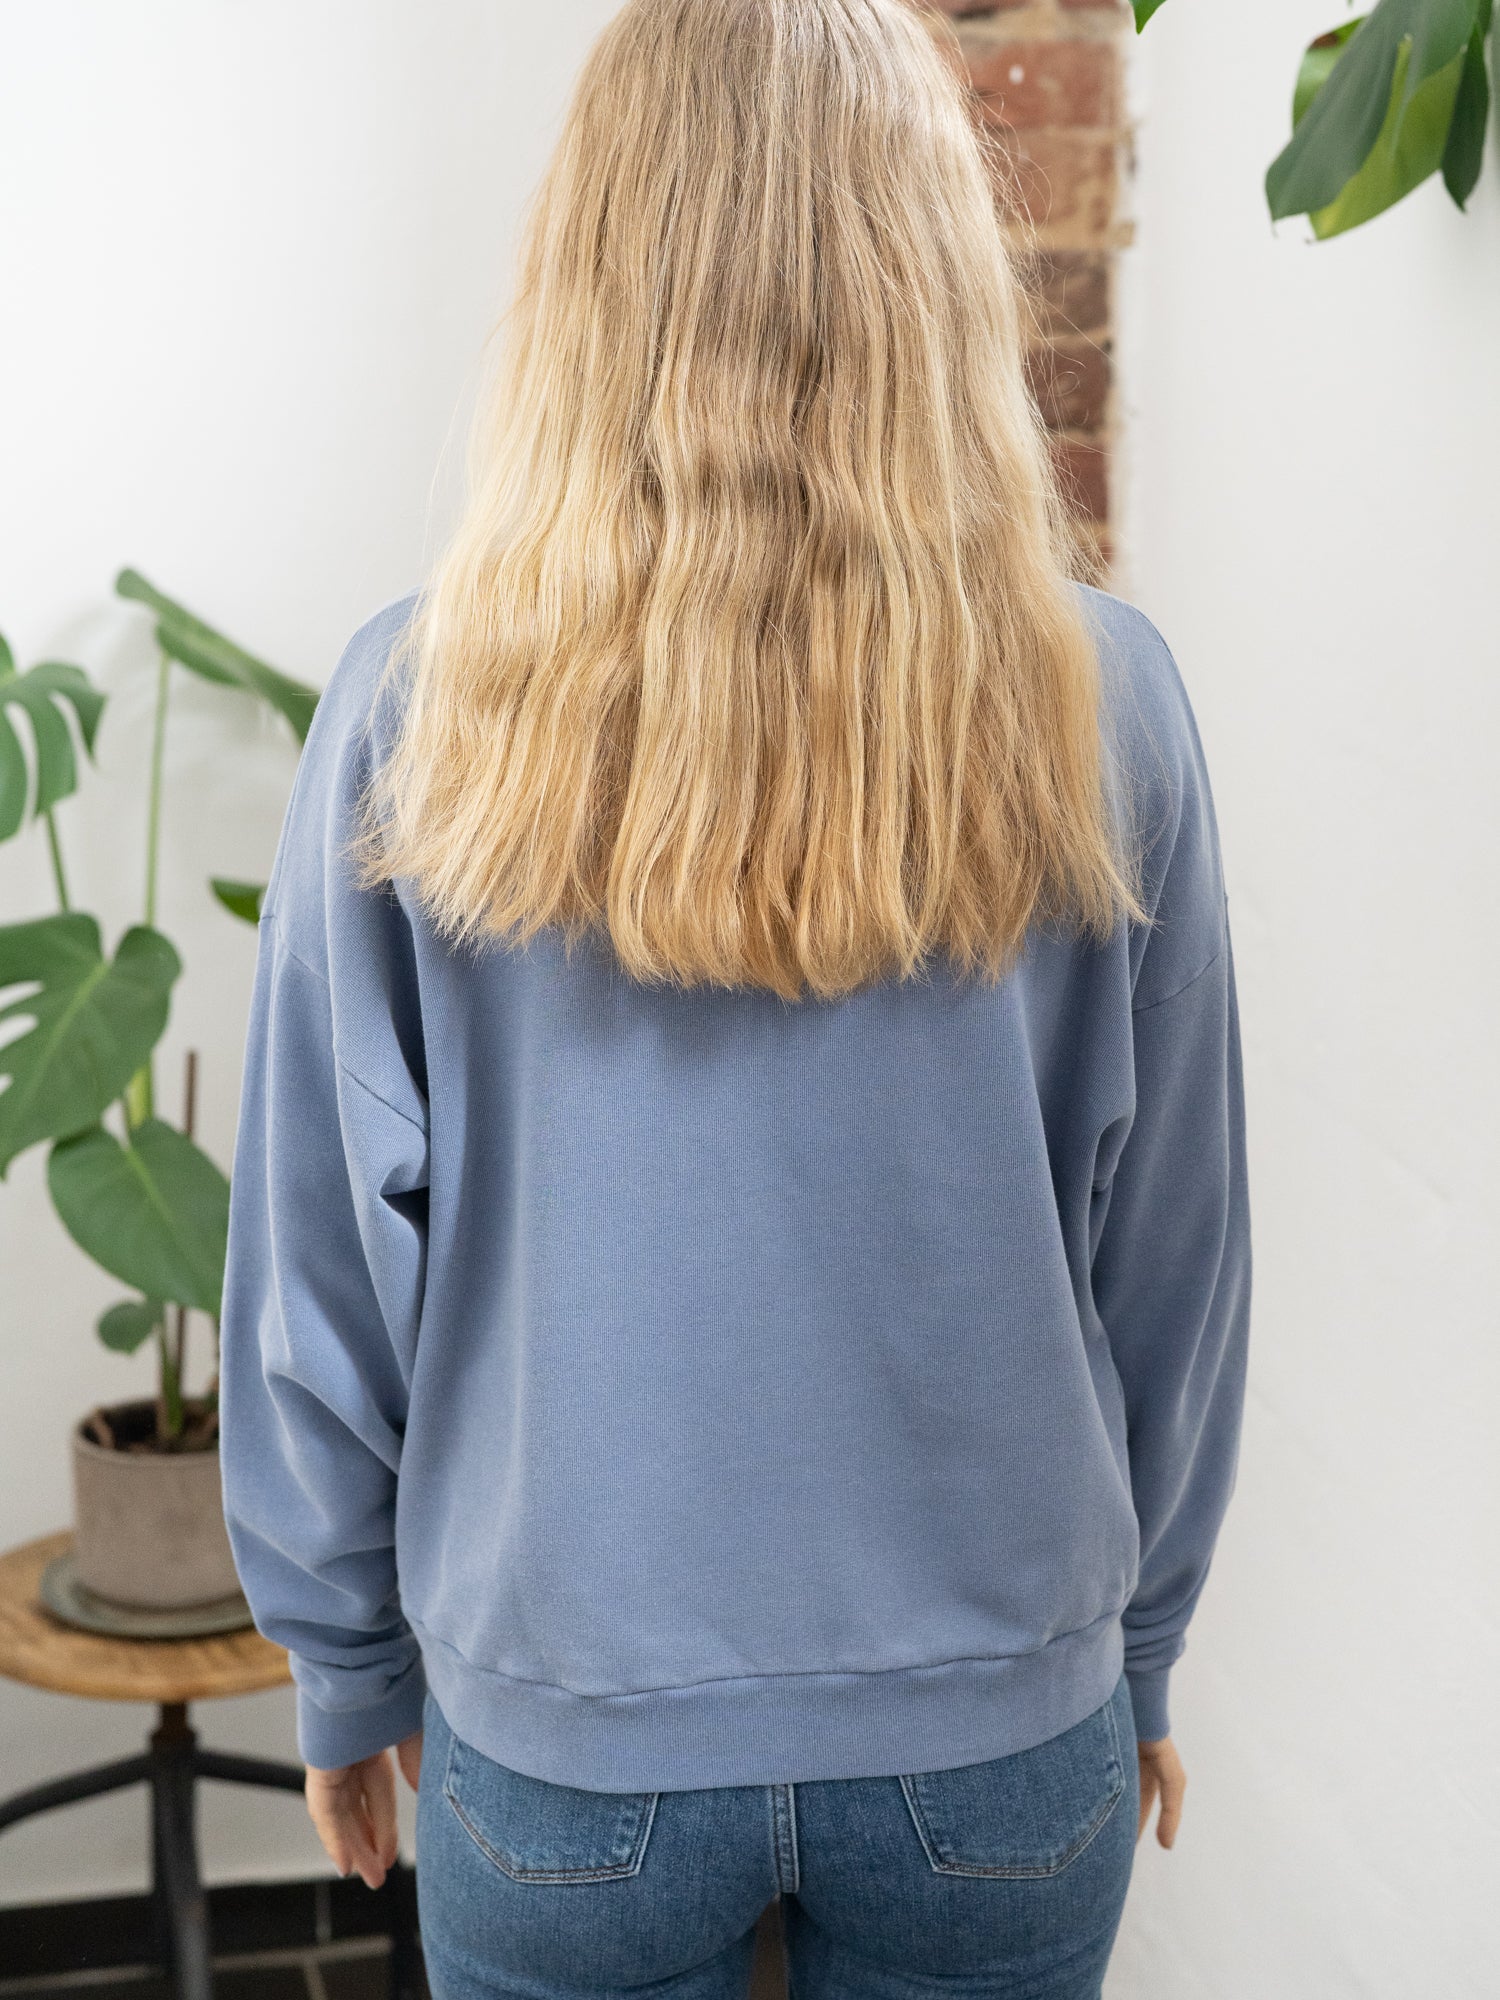 Nachaltiger Fair Fashion Oversize Pulloer von FUXBAU in blau, gefärbt mit naturfarben und getragen von einer jungen blonden Frau.